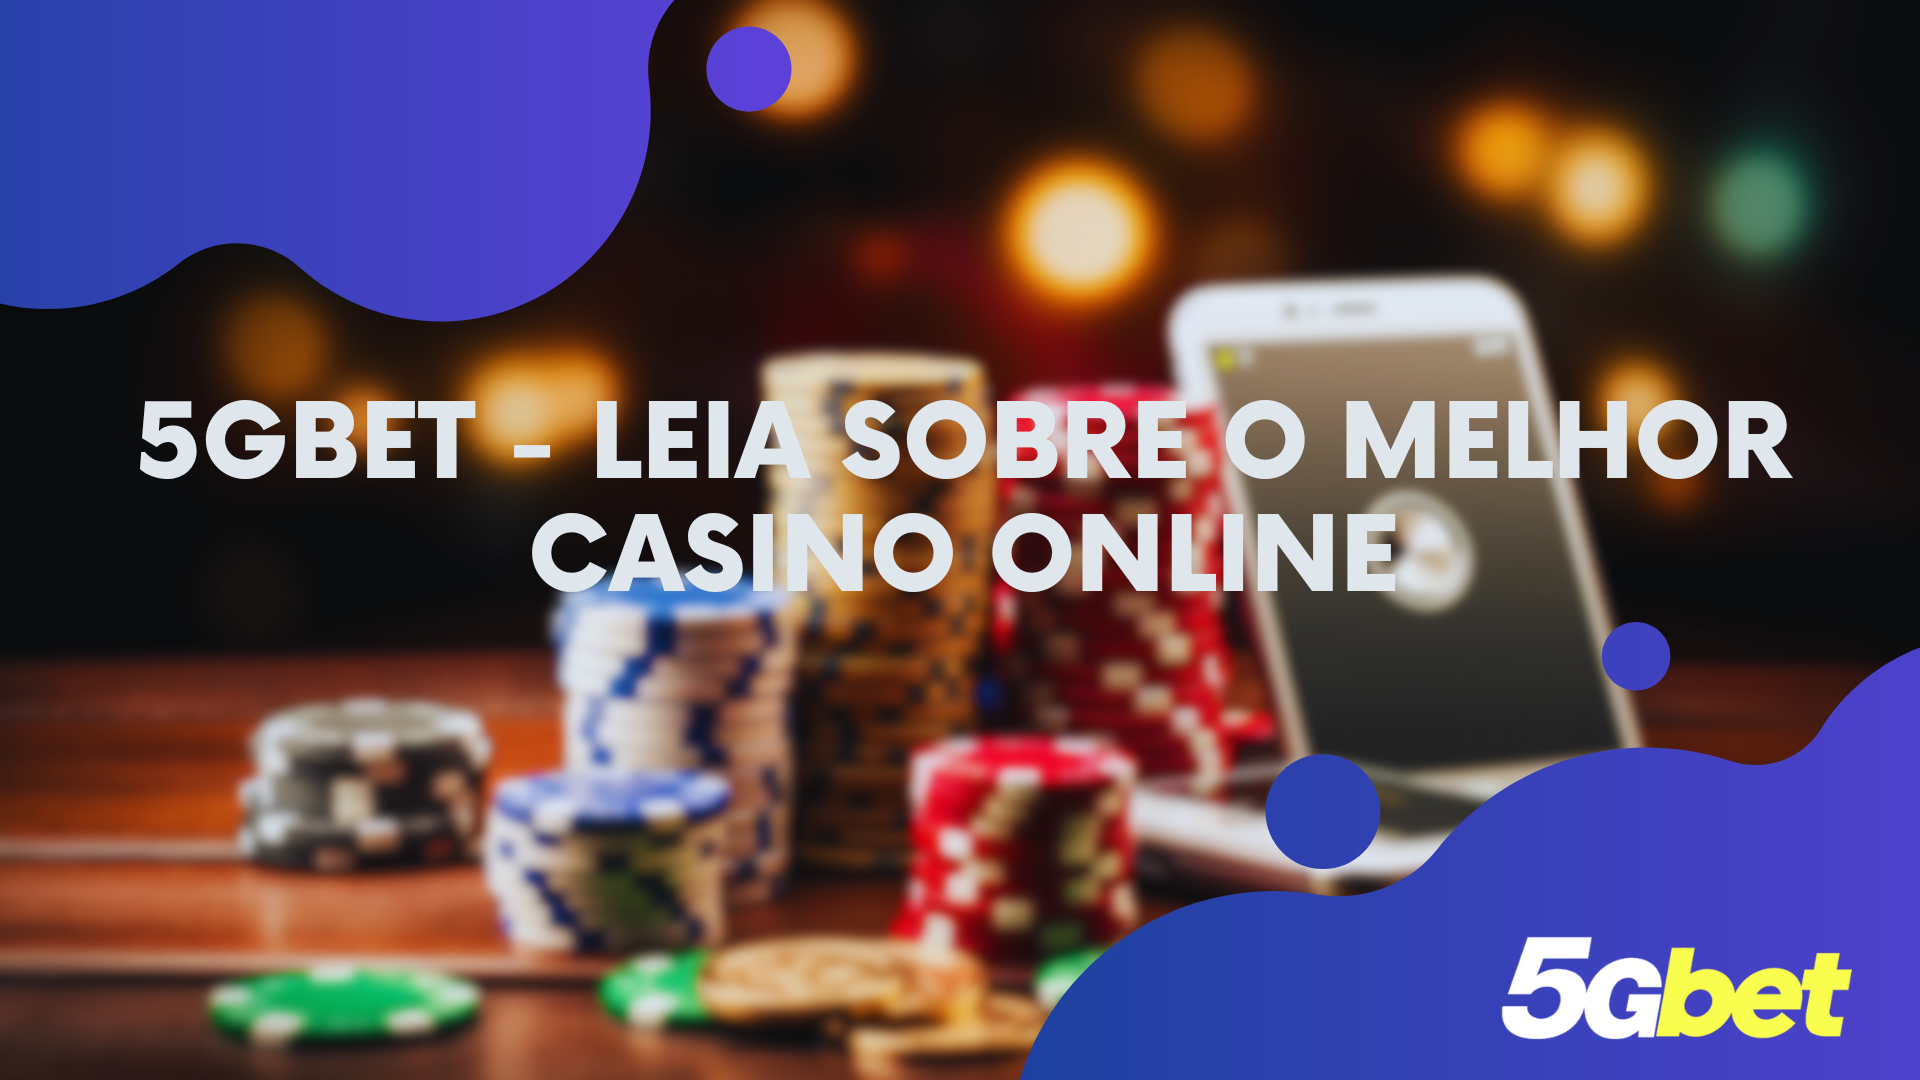 5Gbet - Leia sobre o melhor casino online